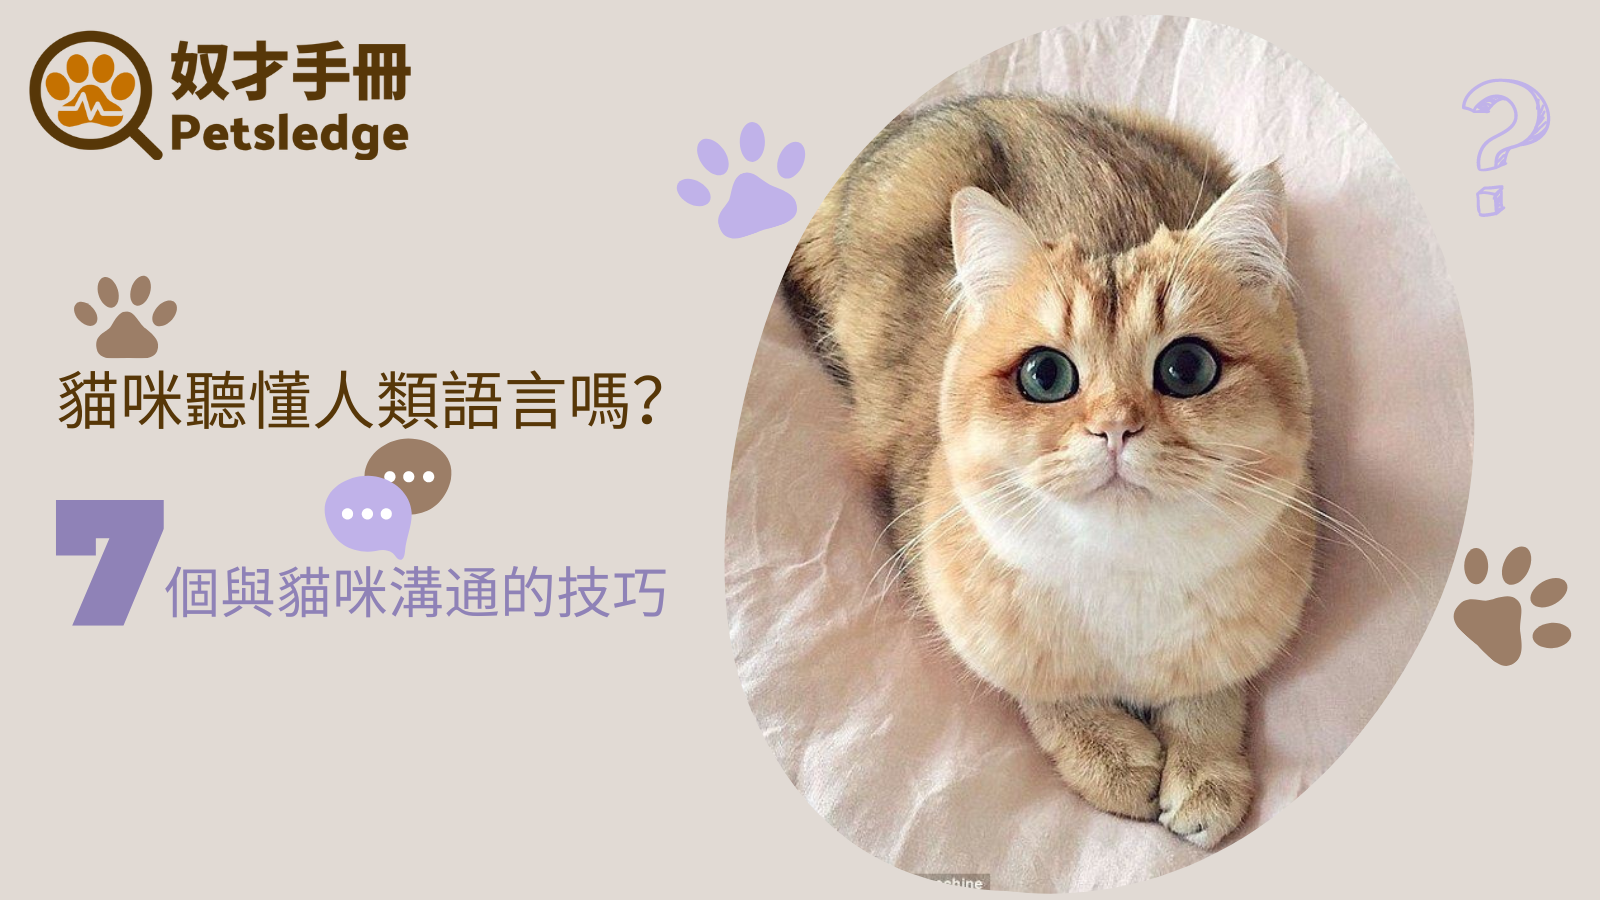 貓咪聽懂人類語言嗎？與貓咪溝通的技巧